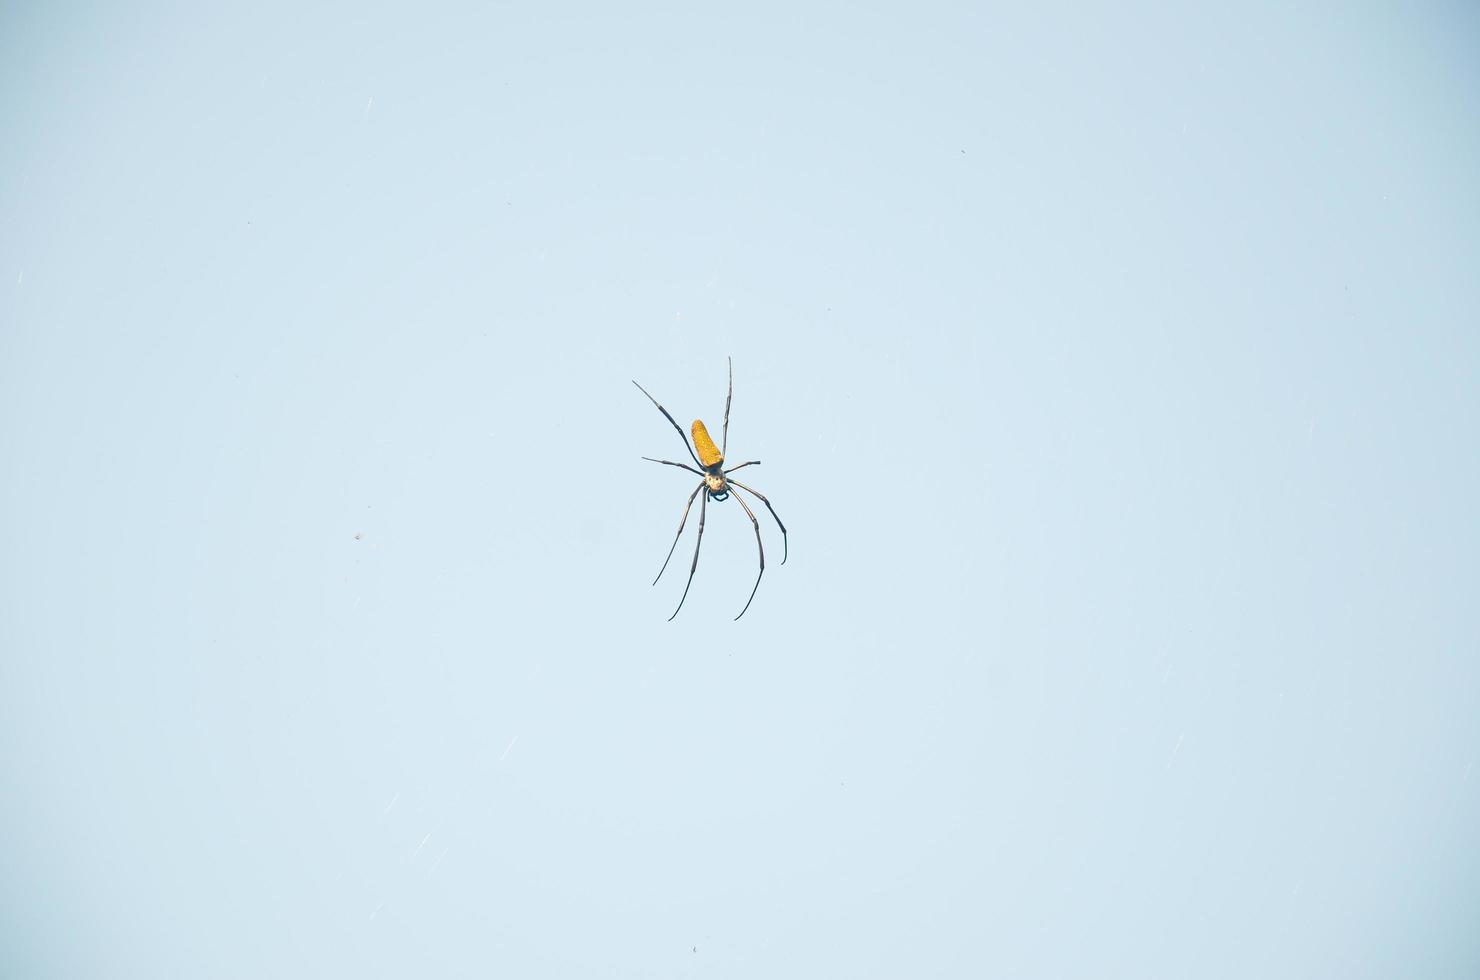 uma amarelo aranha trava em Está teias contra a azul céu foto